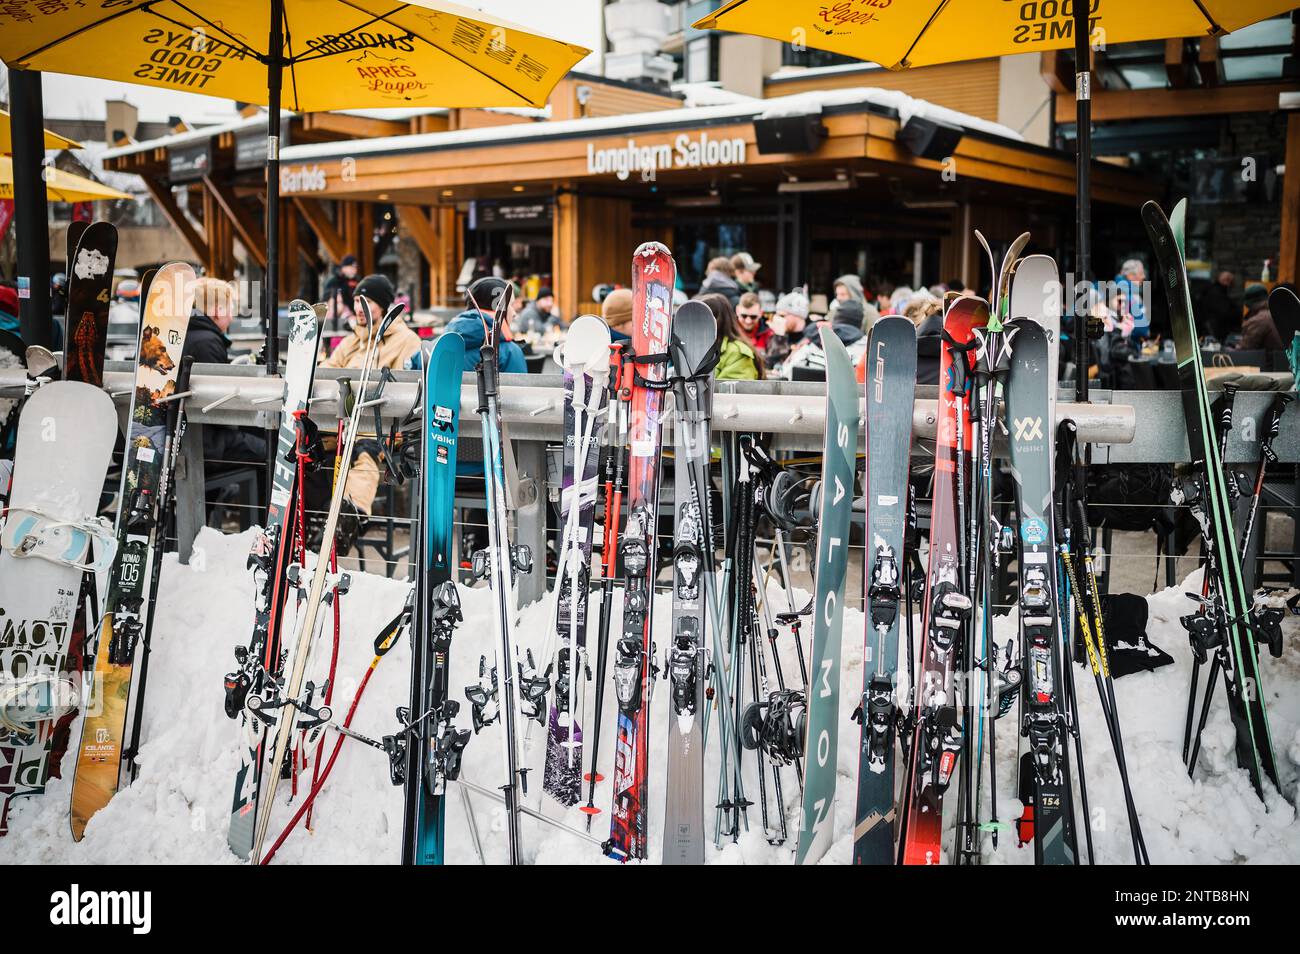 Dopo una giornata di sci al famoso Whistler bar The Longhorn Saloon, i turisti potranno sorseggiare un drink dopo aver sciato. Whistler Village in un pomeriggio invernale innevato Foto Stock